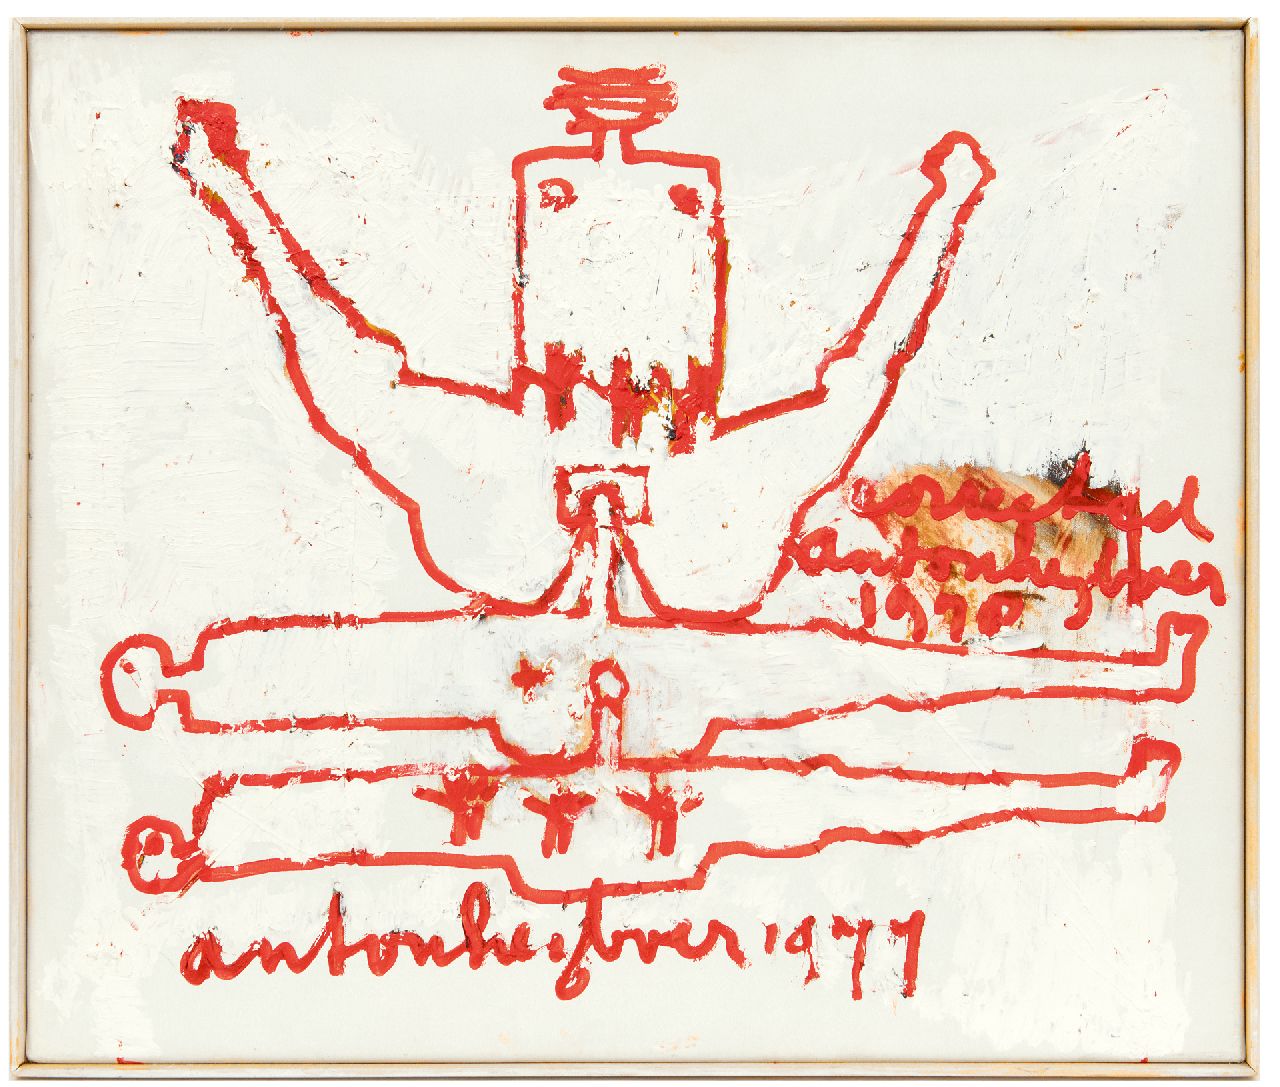 Heyboer A.  | Anton Heyboer | Schilderijen te koop aangeboden | Ollekebolleke, olieverf op doek 54,9 x 64,9 cm, gesigneerd tweemaal middenonder en rechts van het midden en gedateerd 1977